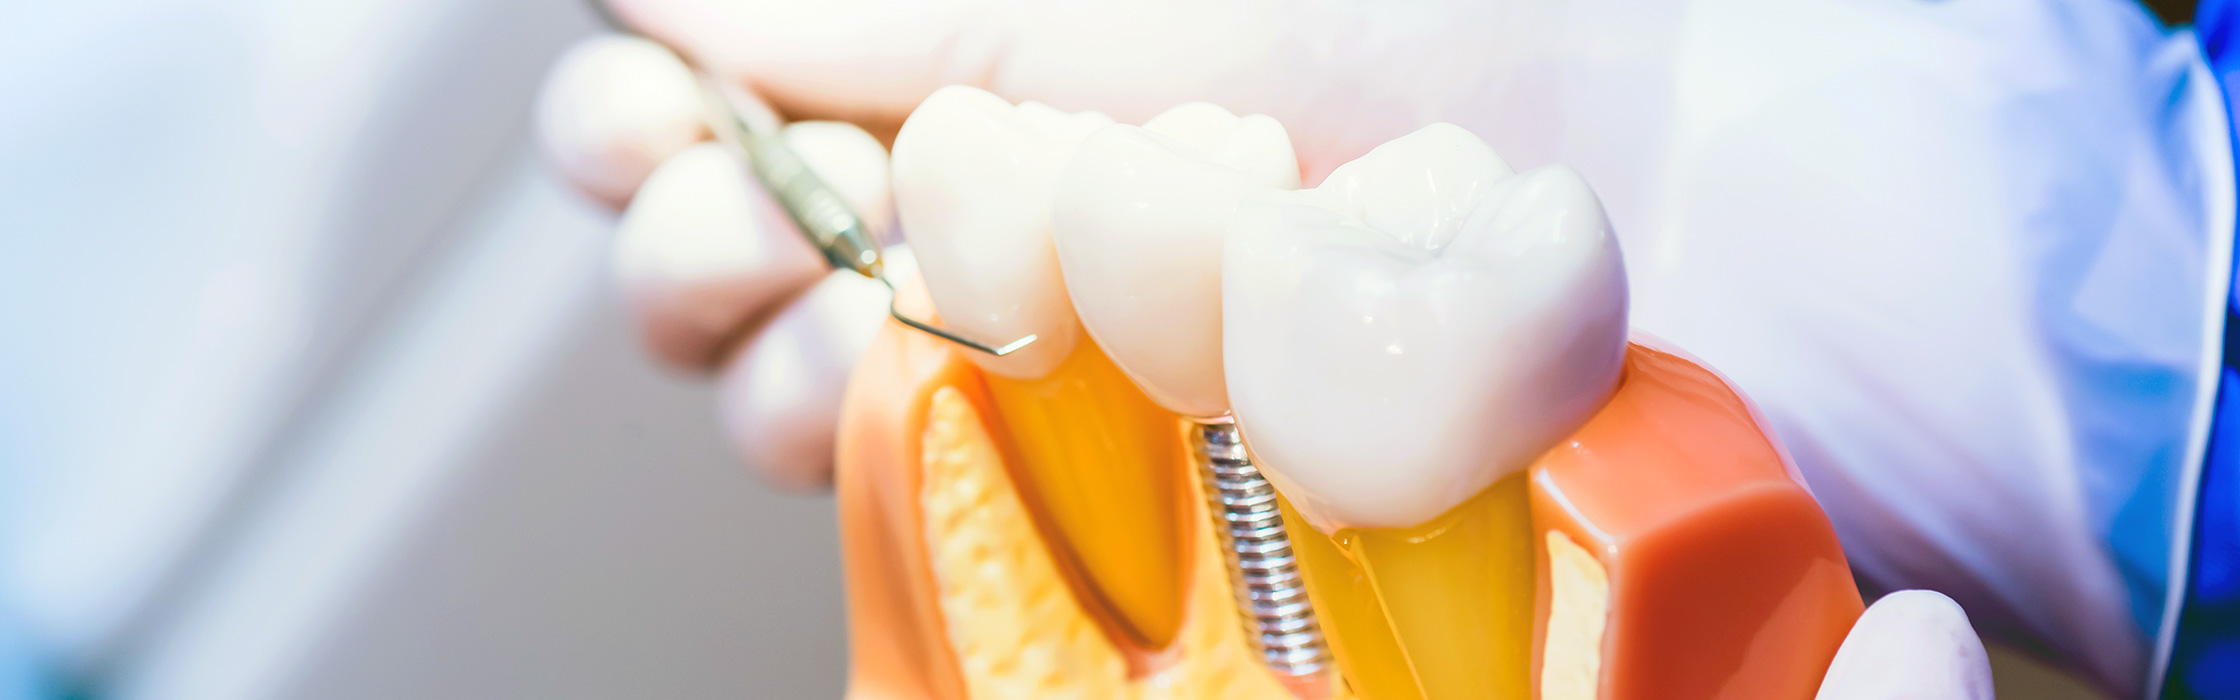 Zahnimplantat: Der professionelle Zahnersatz bei Ihrem Zahnarzt